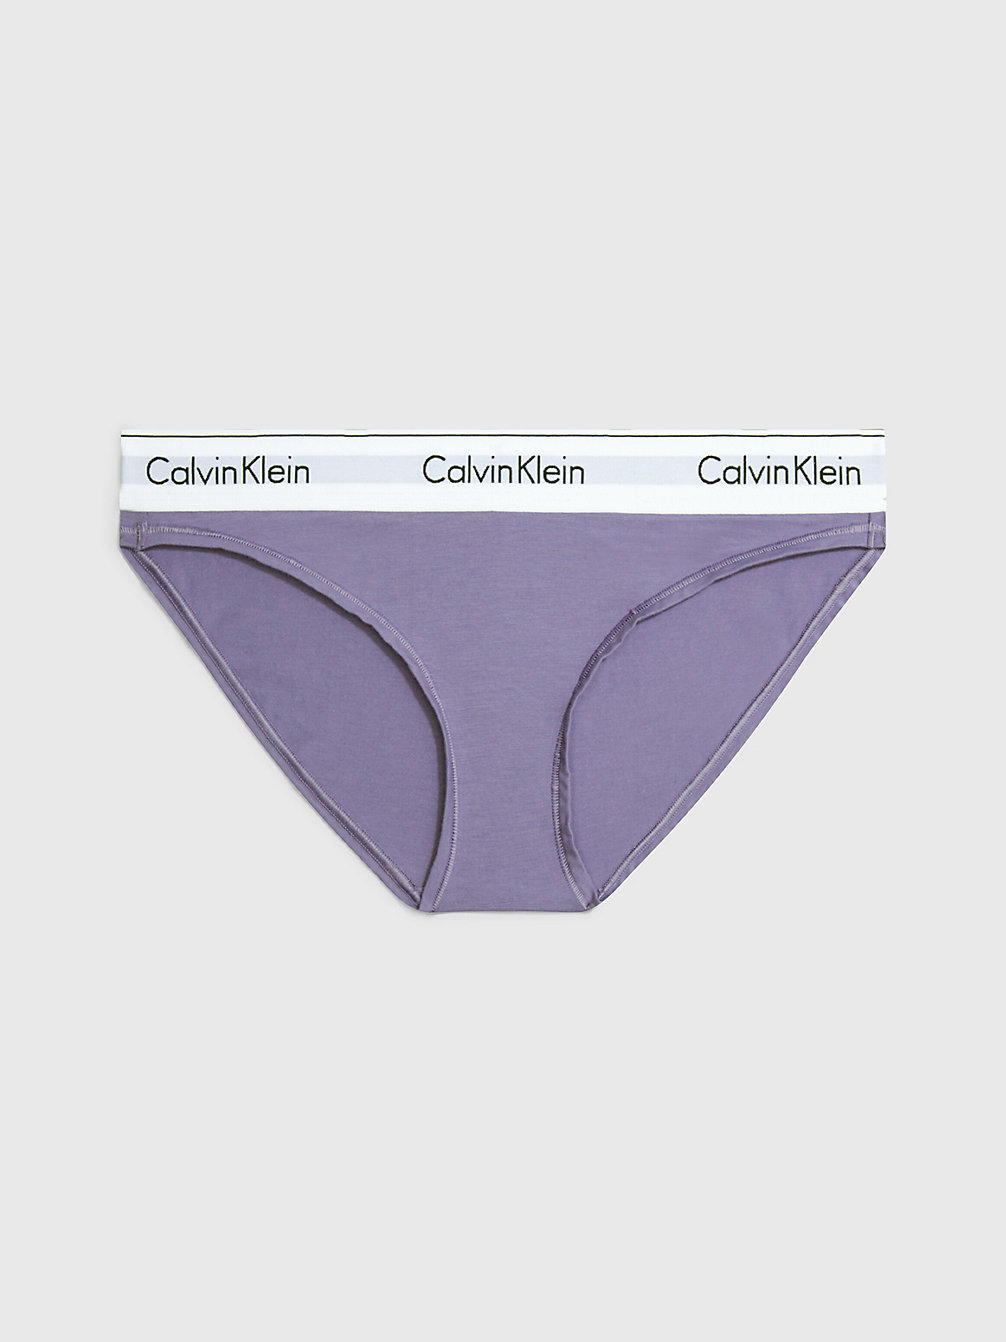 SPLASH OF GRAPE > Figi - Modern Cotton > undefined Kobiety - Calvin Klein